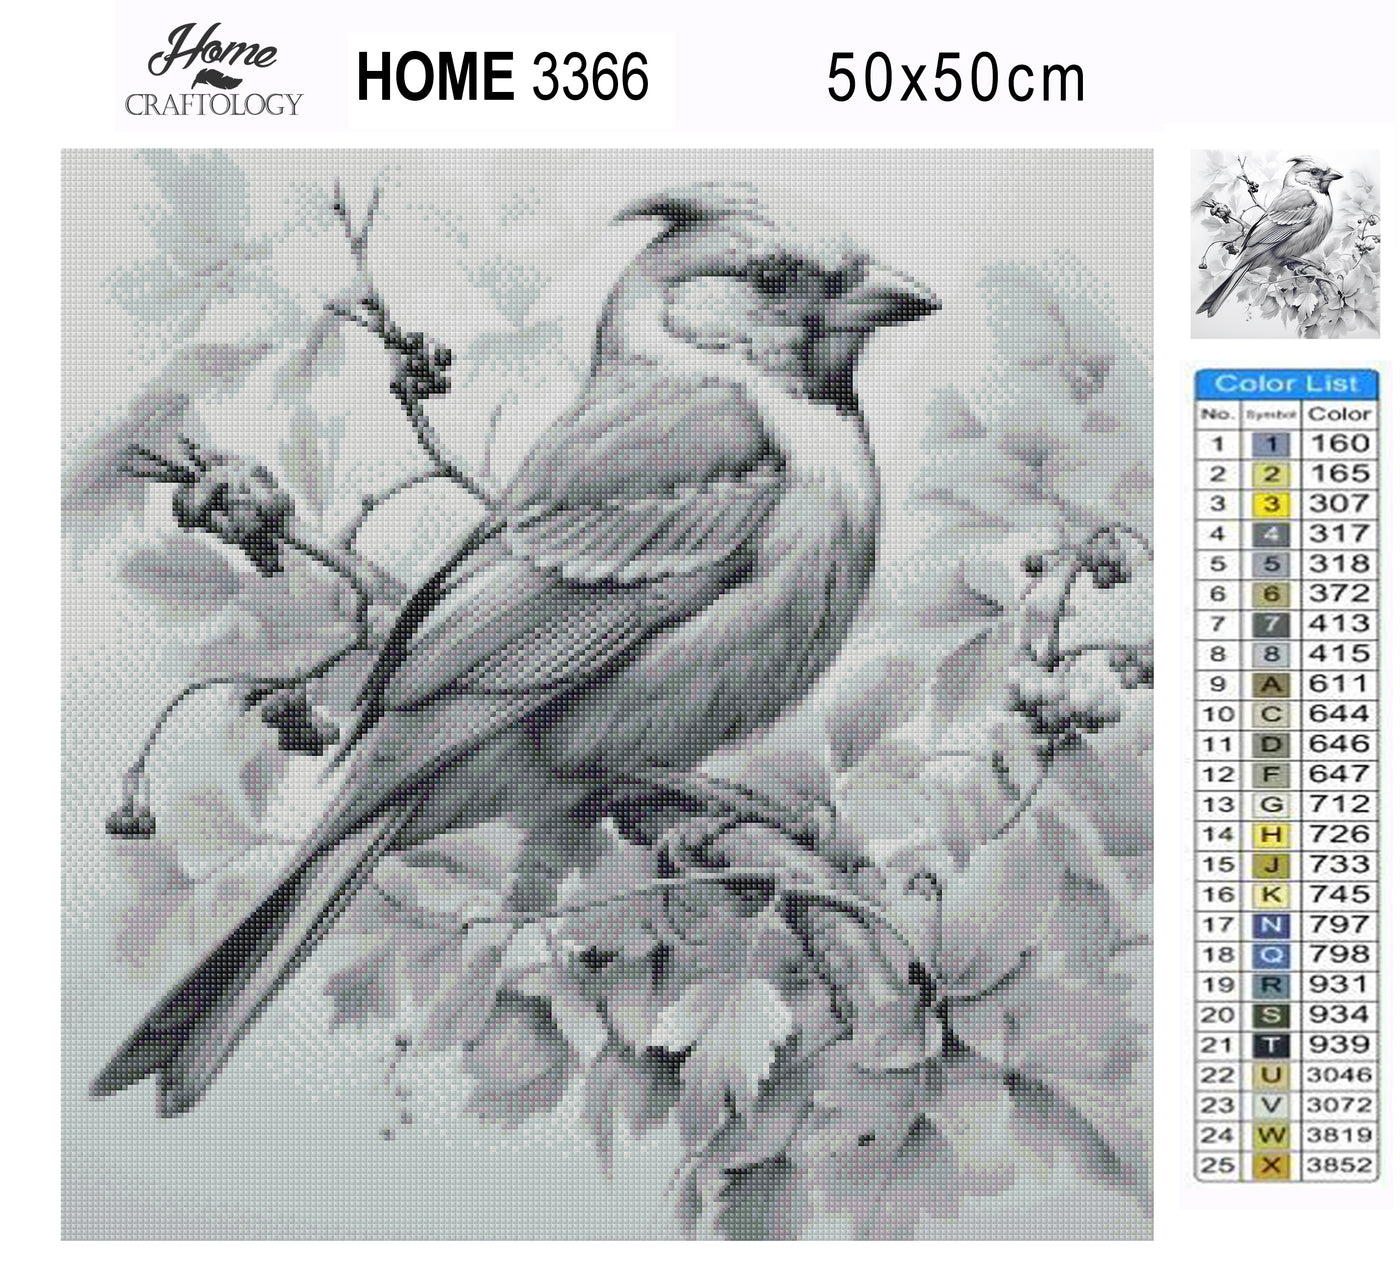 New! Black and White Bird - Premium Diamond Painting Kit